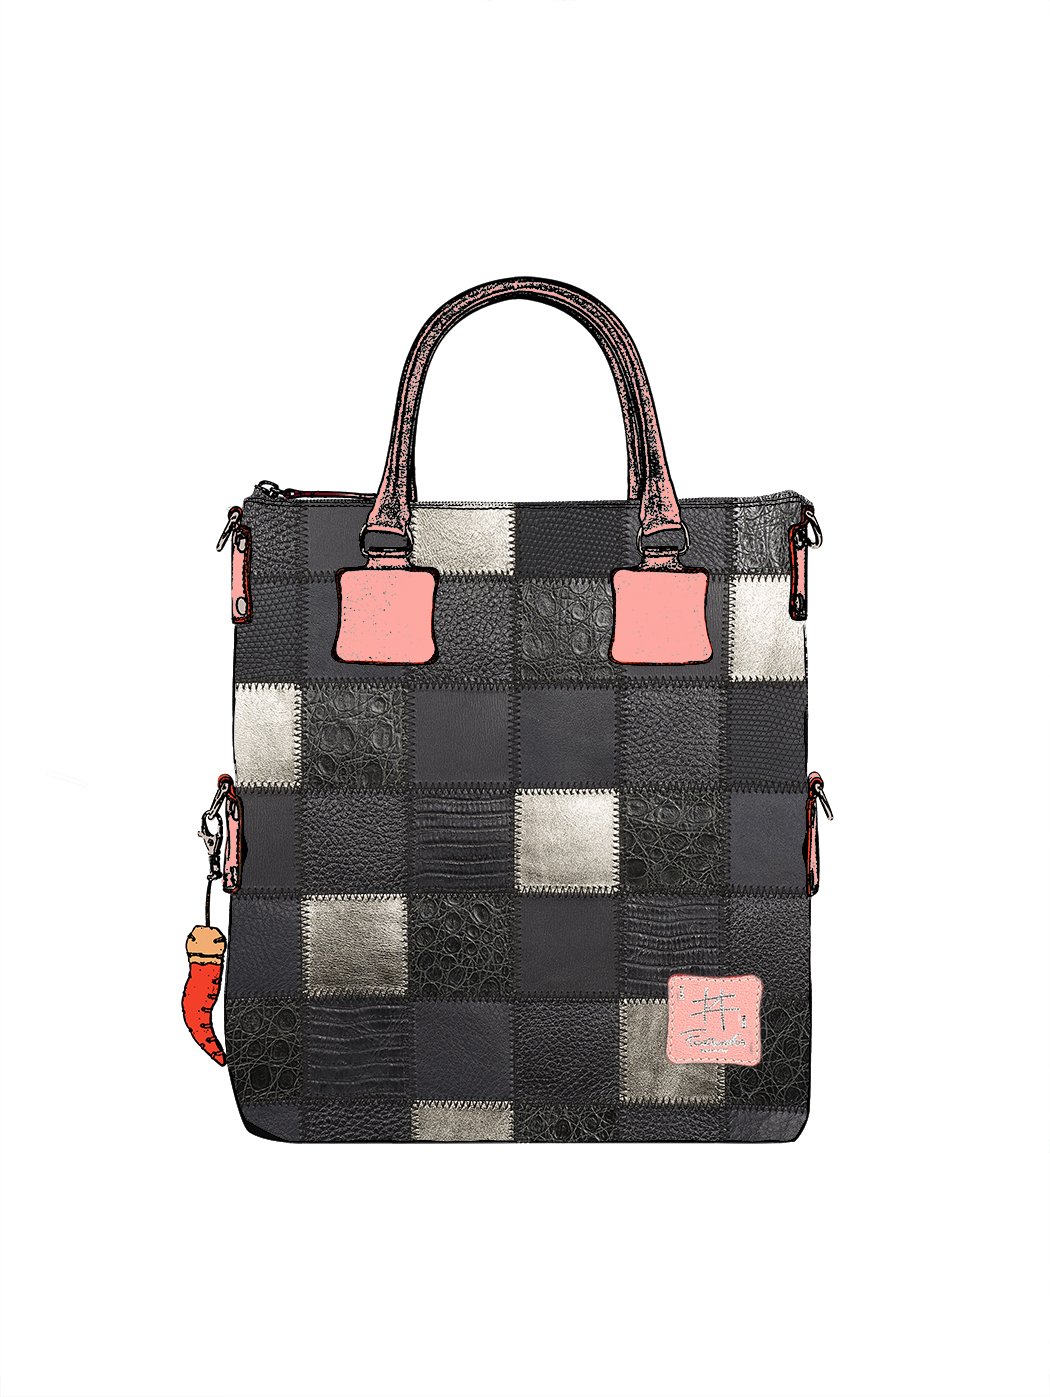 Дизайнерская сумка из коллекции Fortunata в стиле пэчворк черно - серого цвета